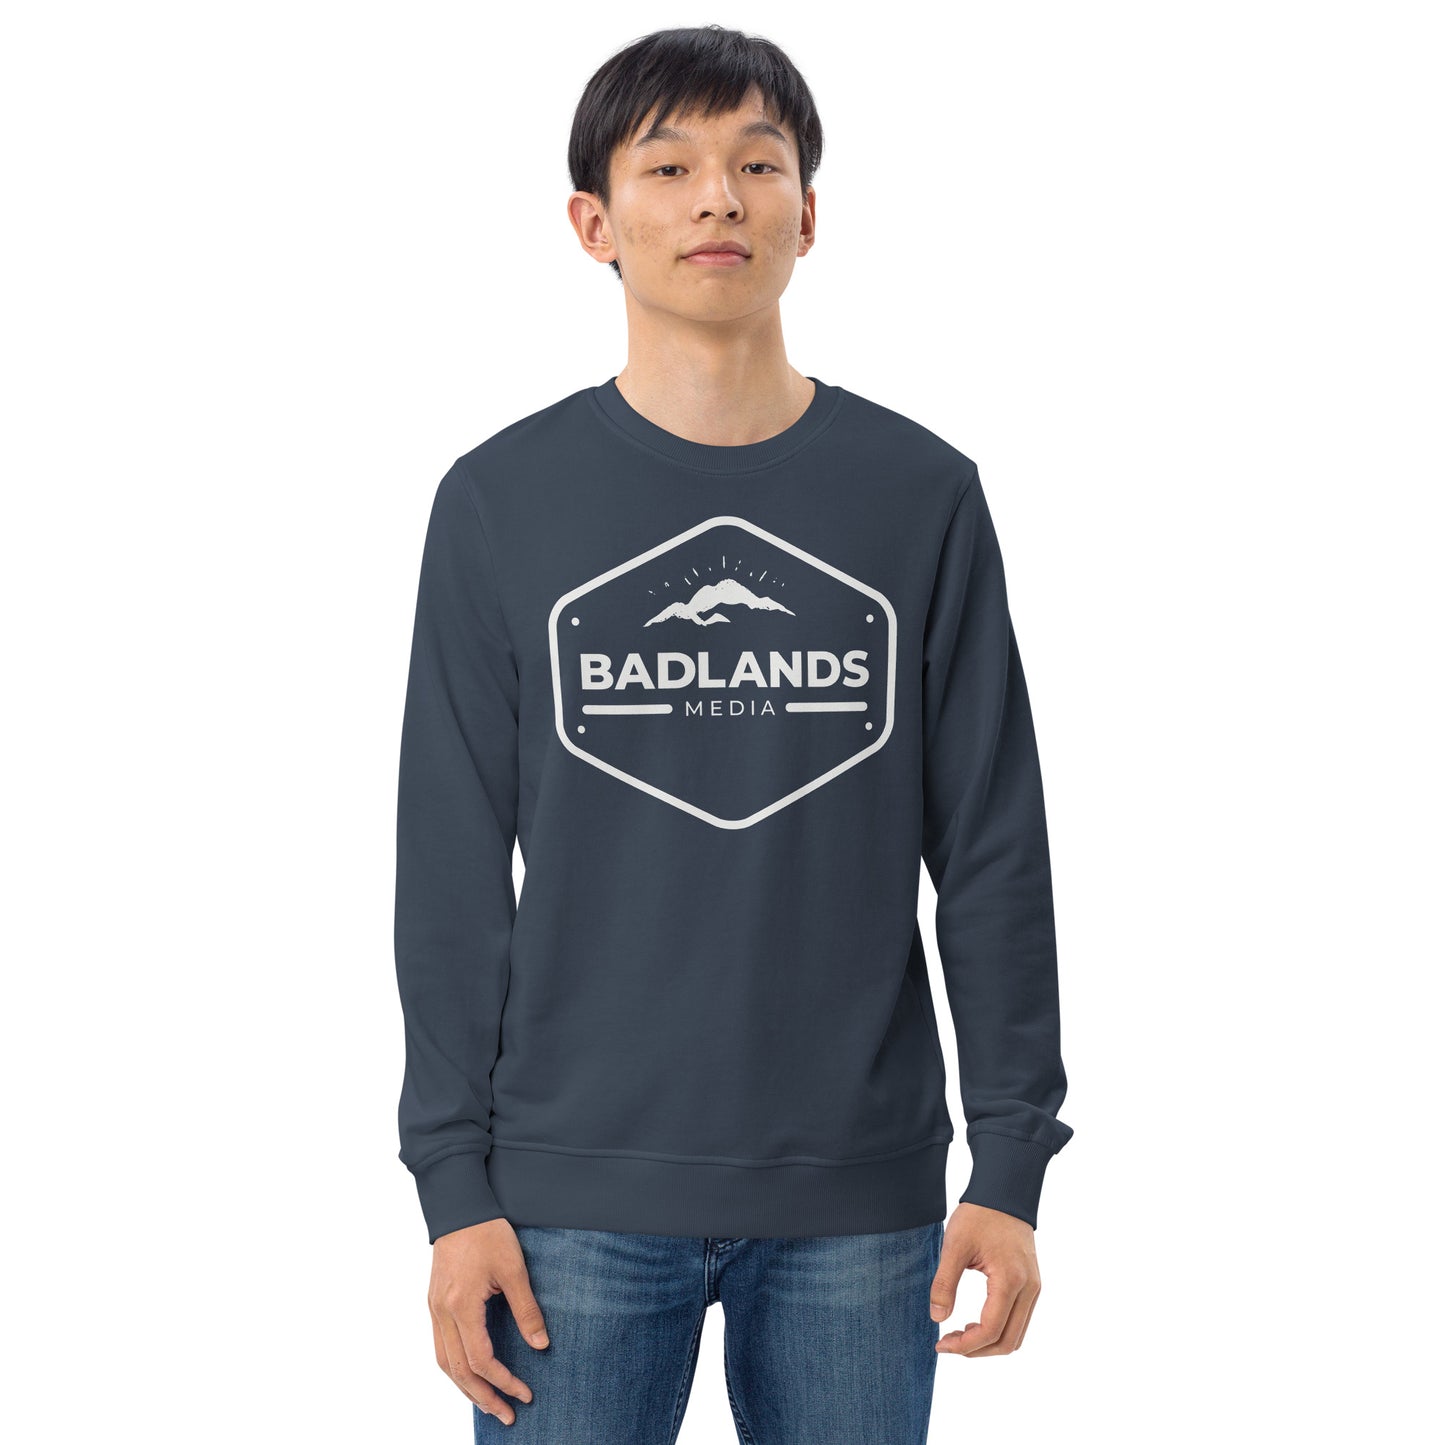 Badlands Unisex Crewneck Organic Sweatshirt with white logo